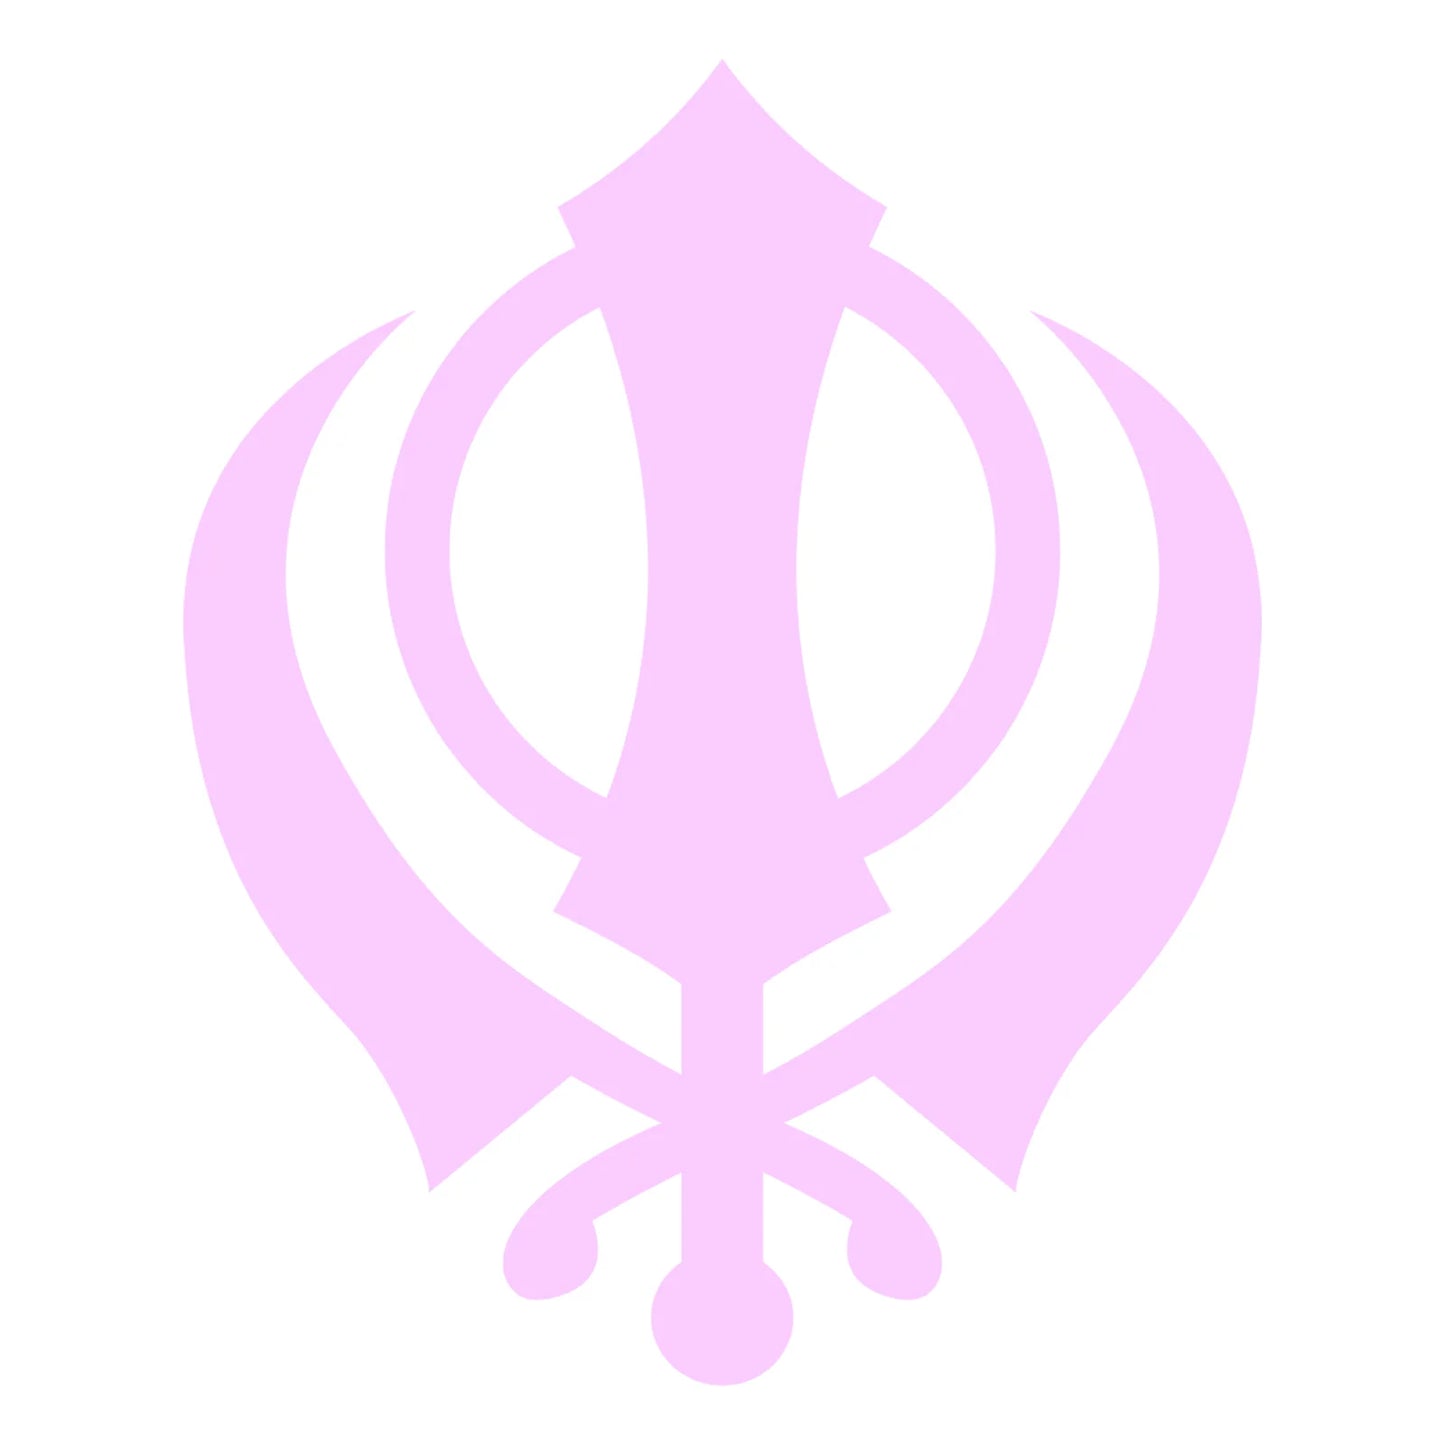 Sikh Khanda Window Sticker in Pink